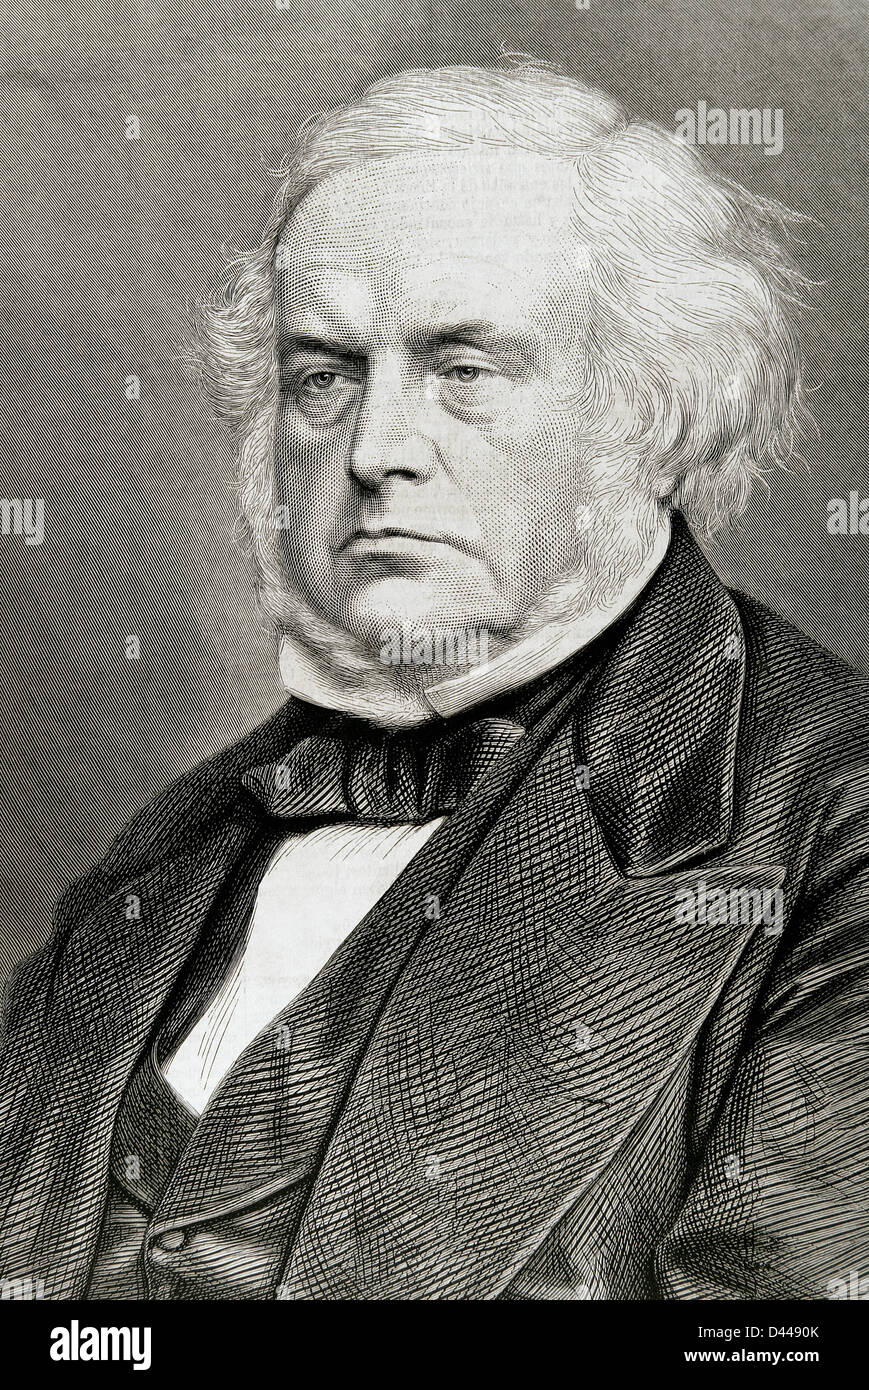 John Bright (1811-1889). Britischer Politiker, Mitglied der Liberalen Partei. Gravur. Stockfoto